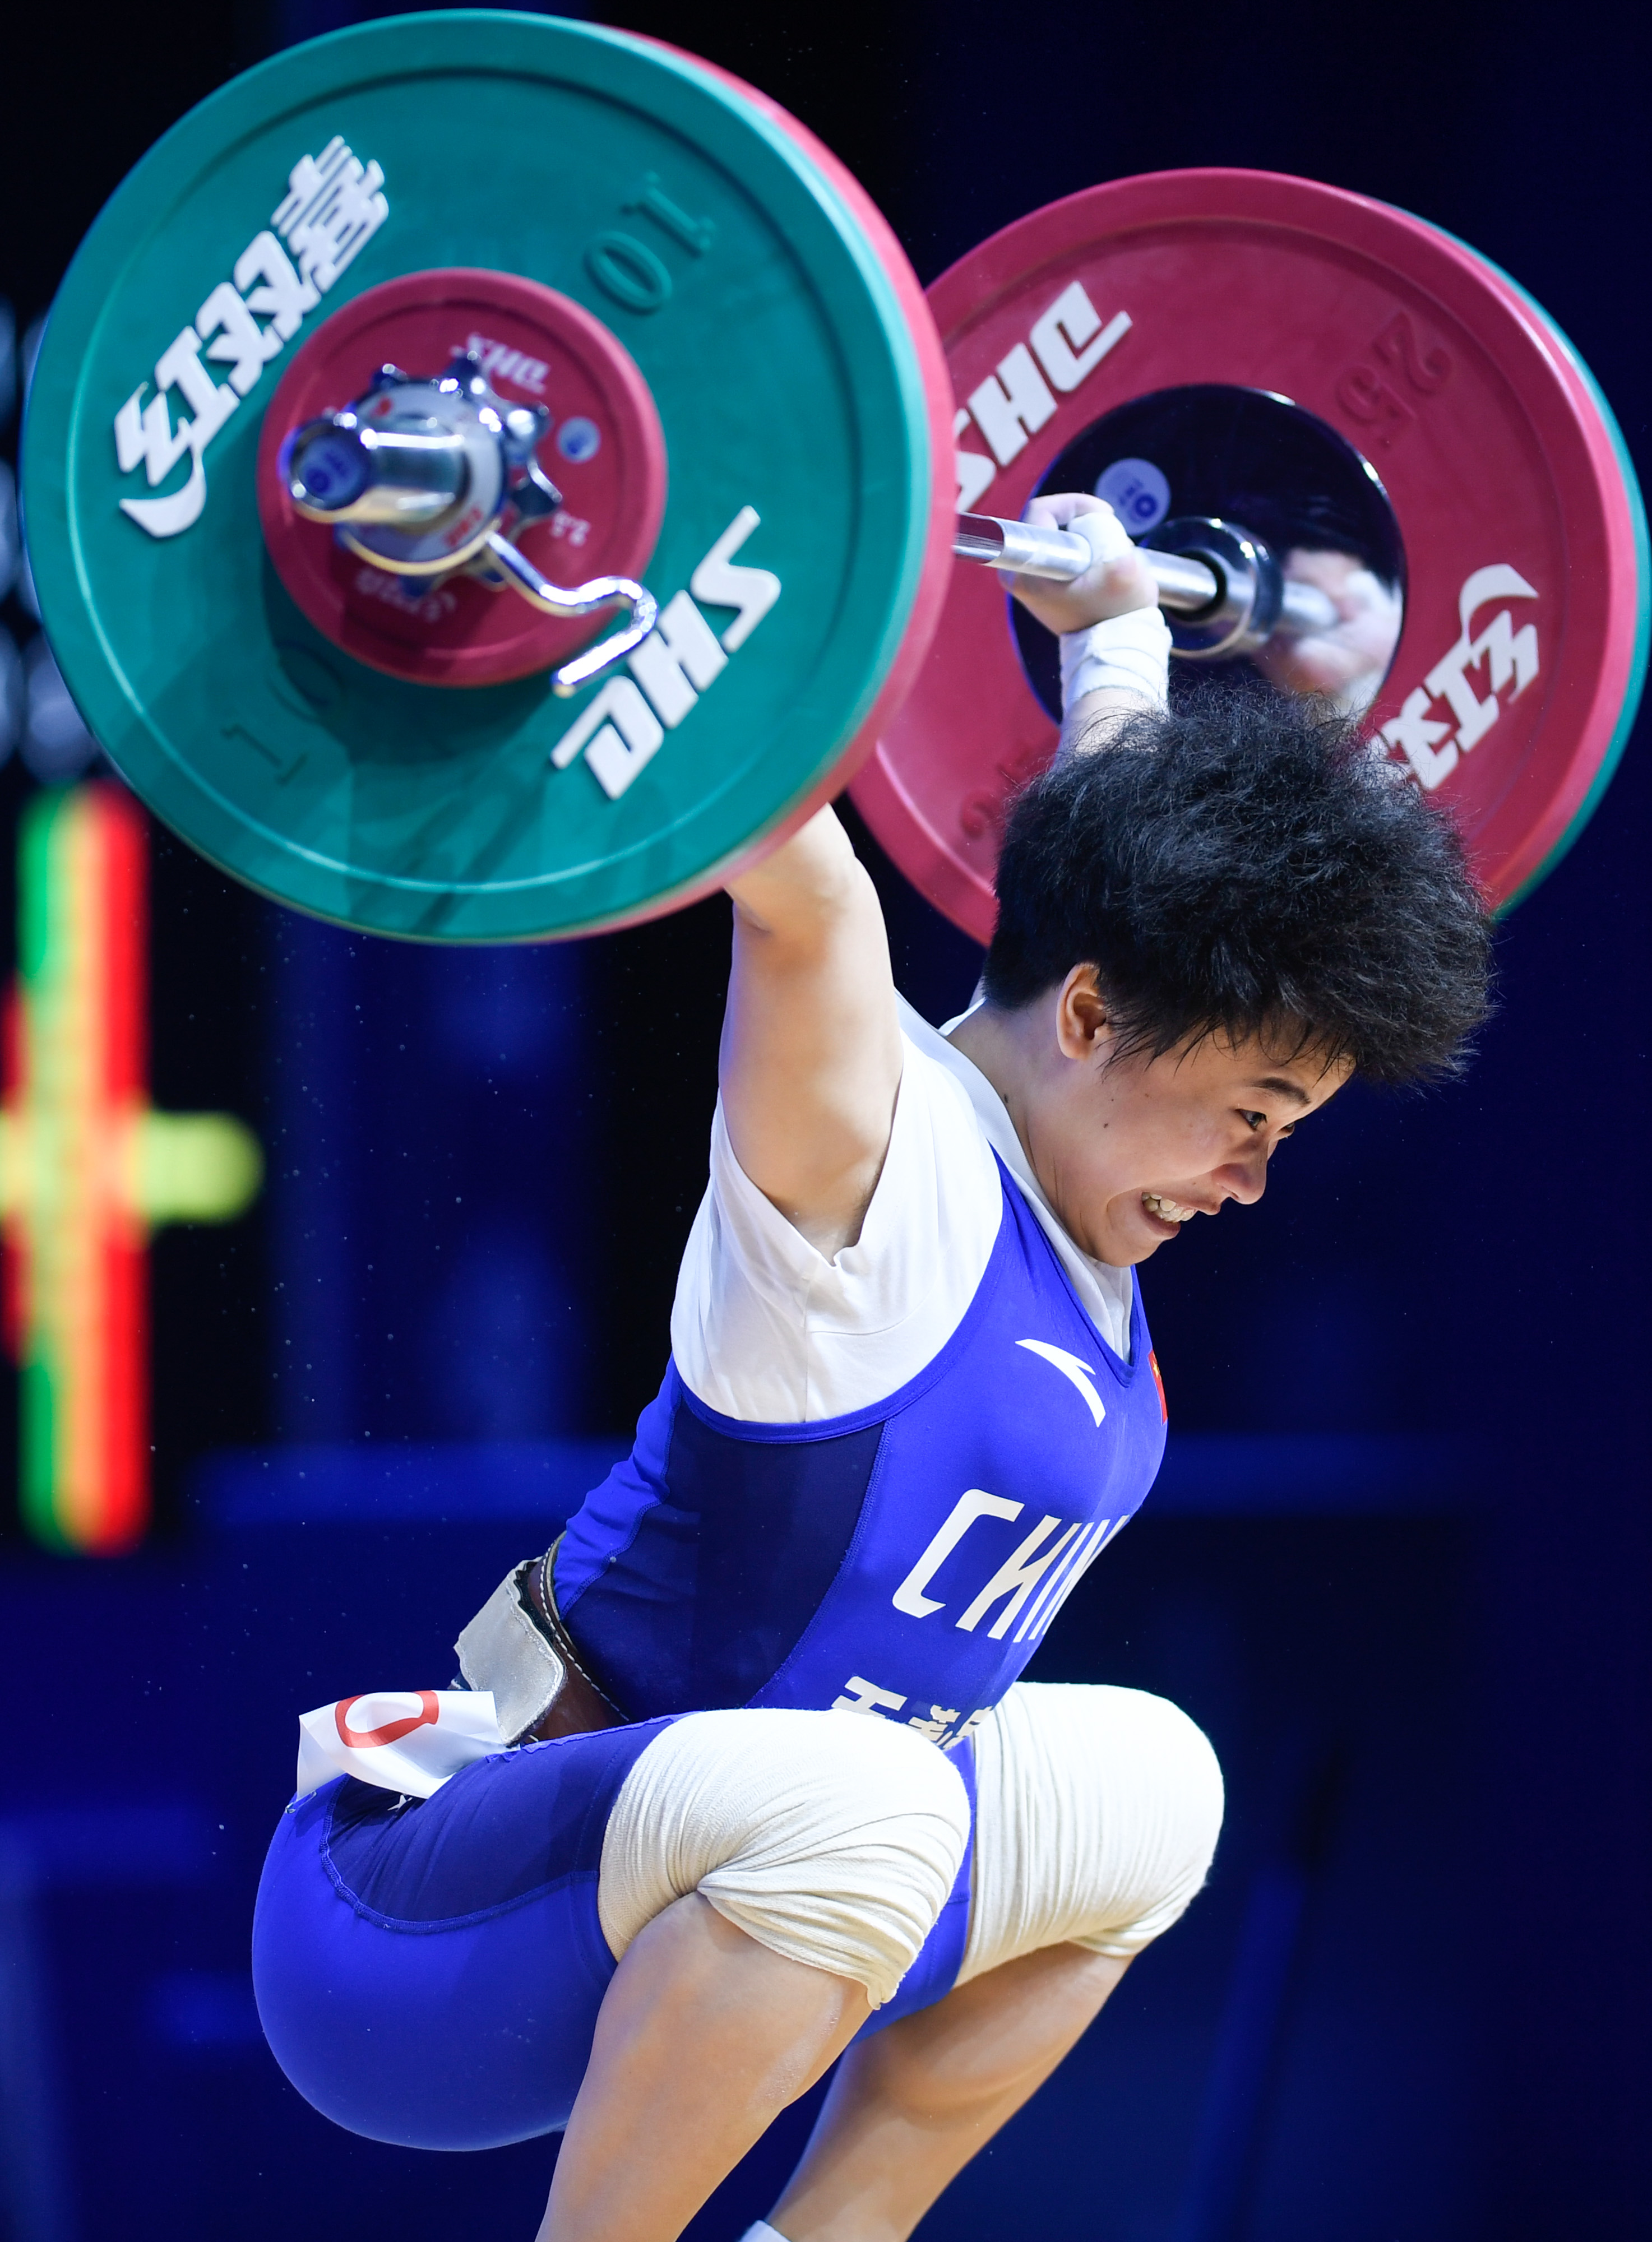 举重——亚锦赛:侯志慧获女子49公斤级冠军